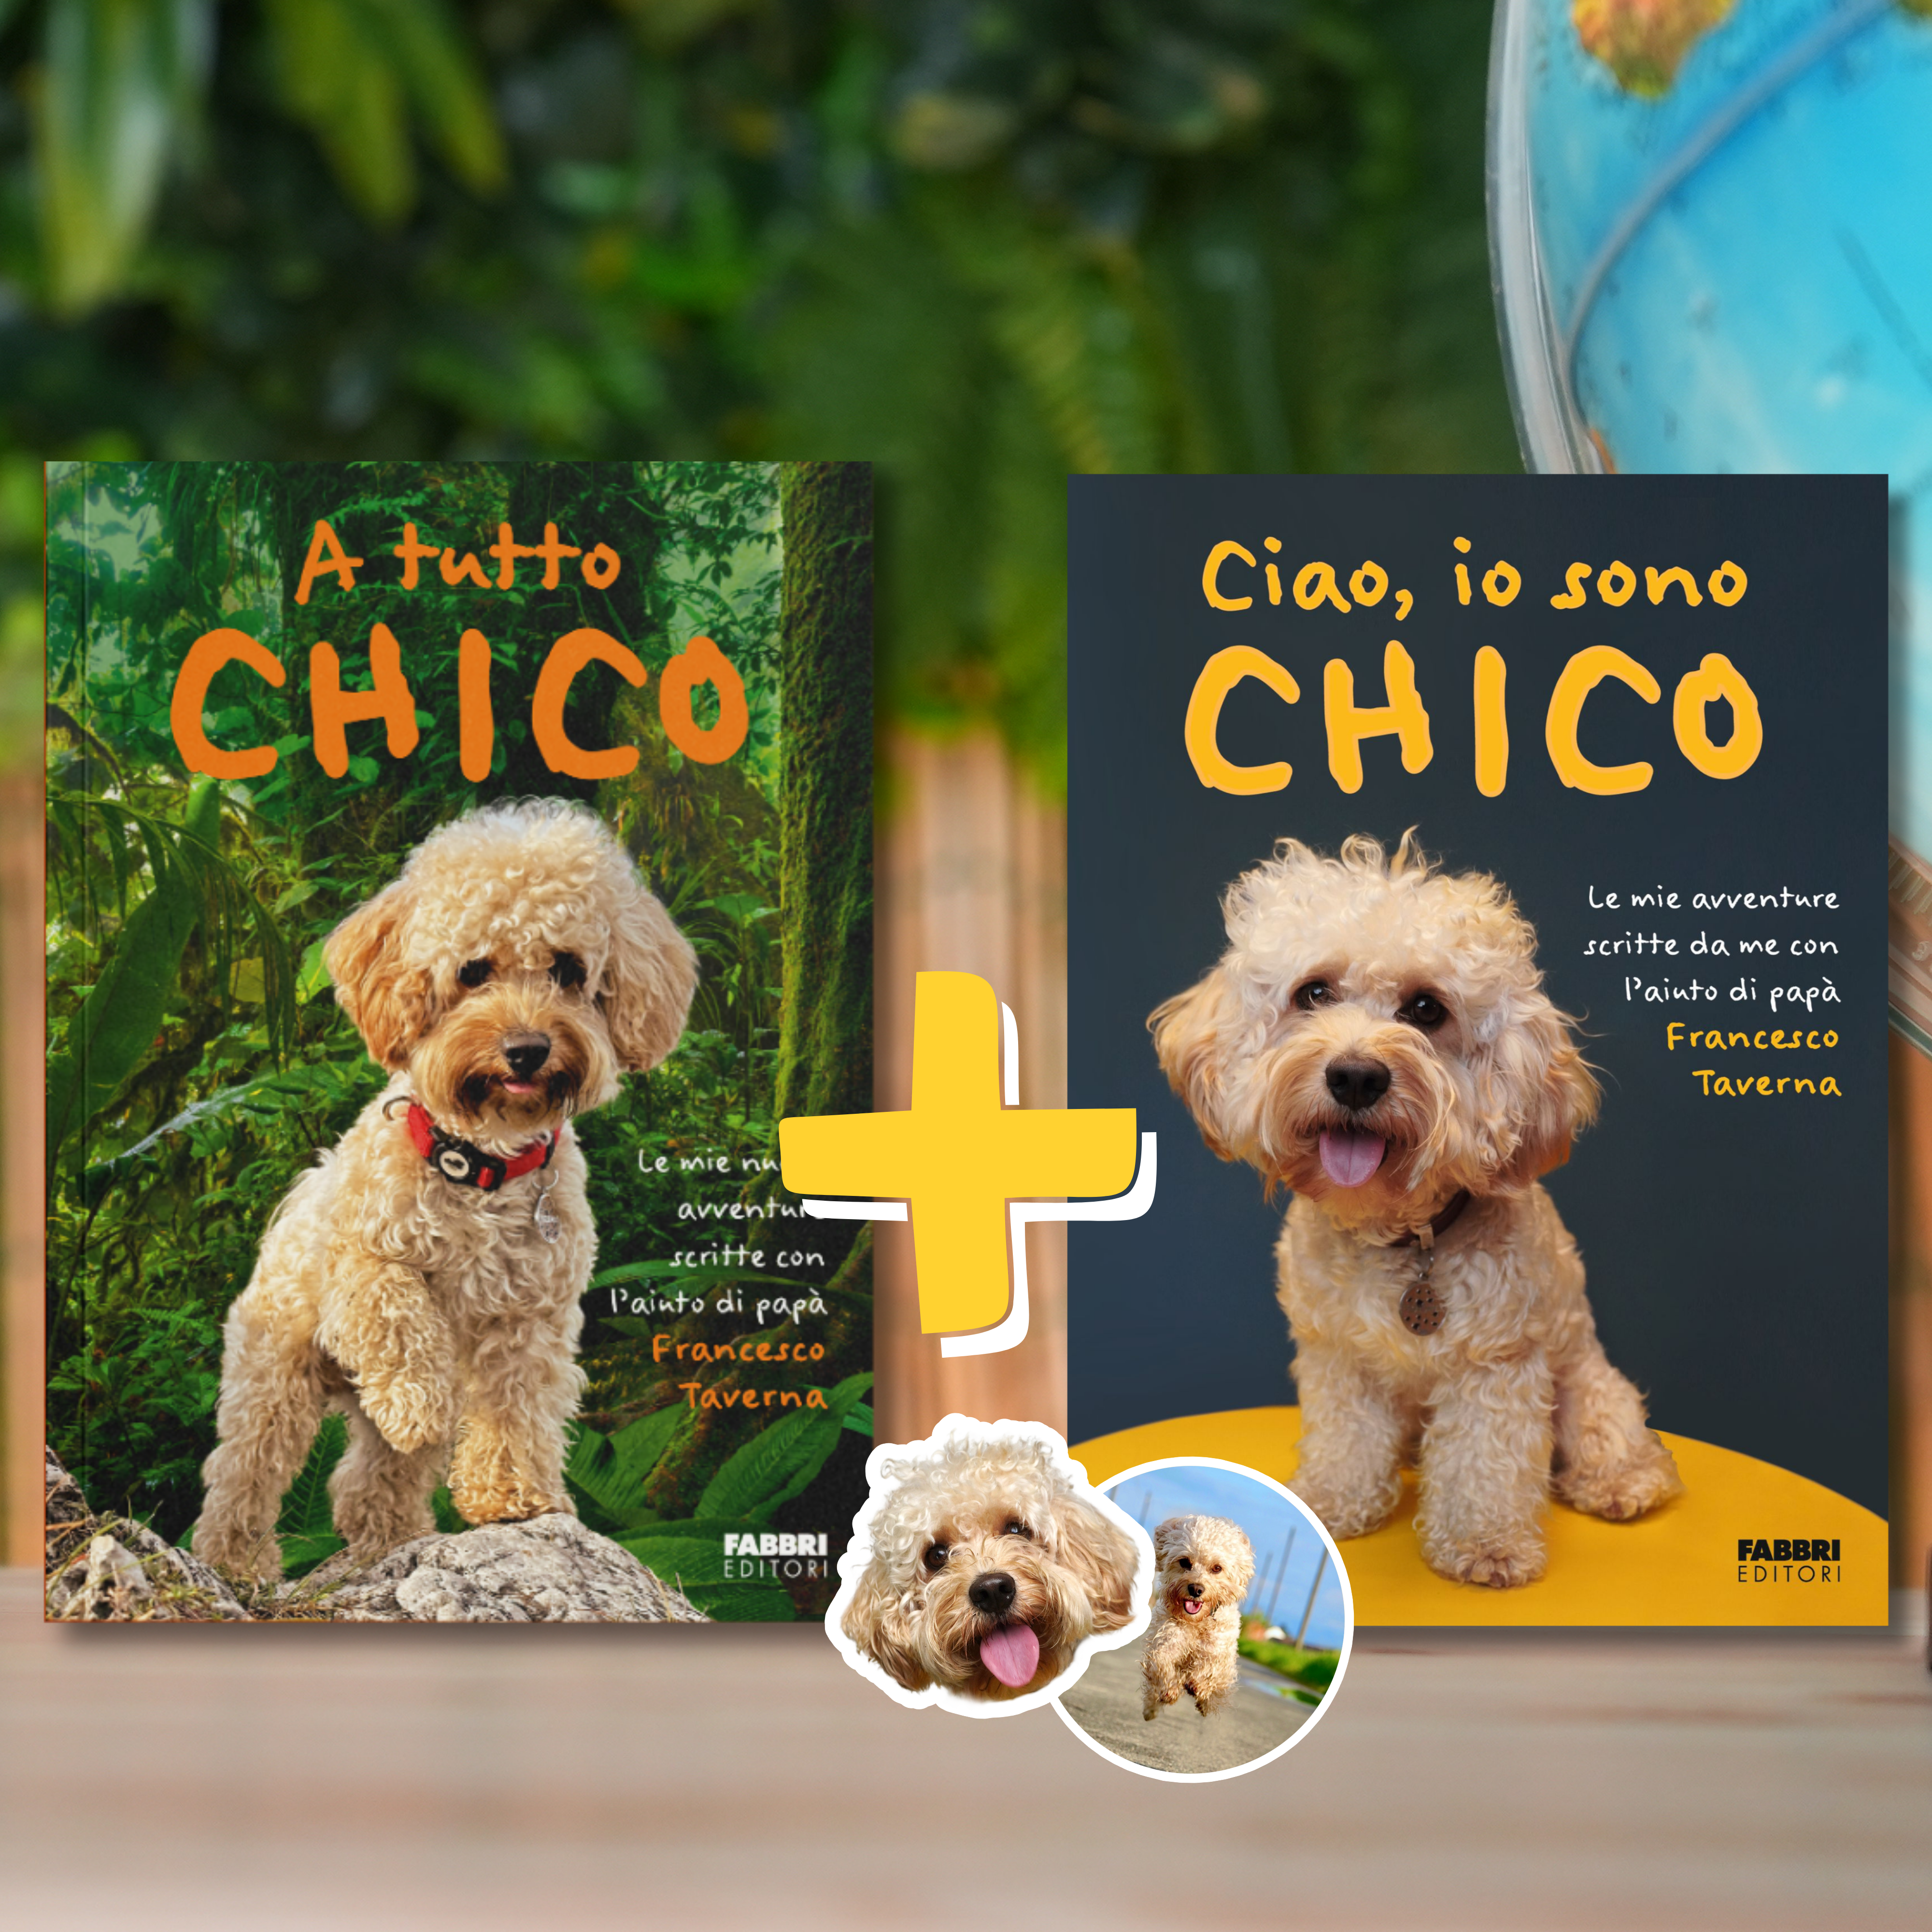 Bundle libri "A tutto Chico" e "Ciao, io sono Chico" + Adesivi omaggio